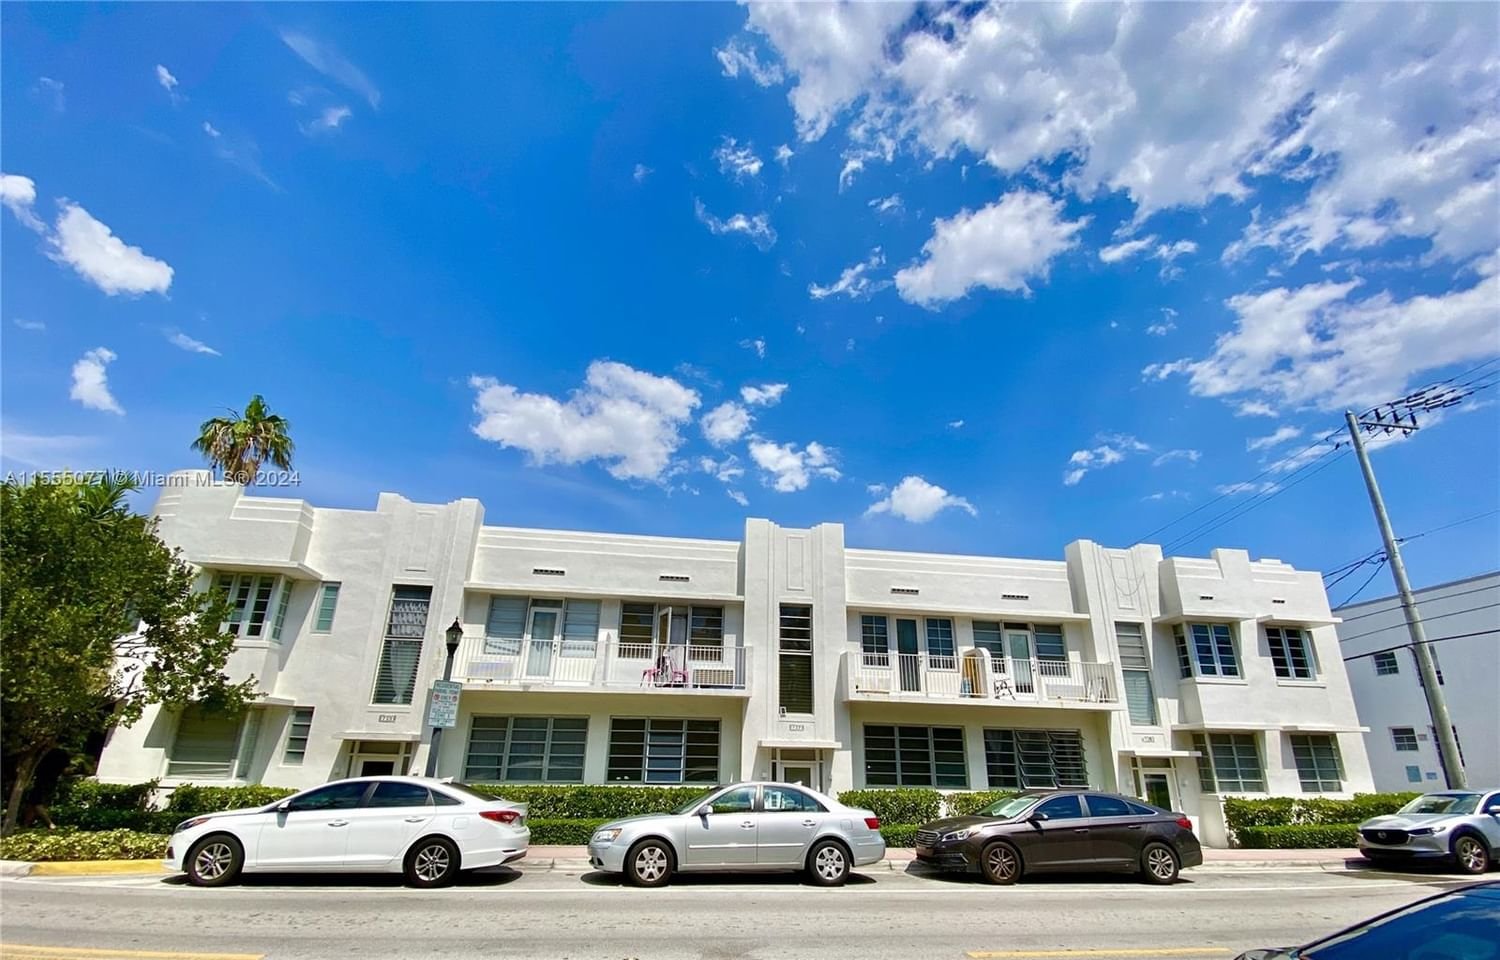 Real estate property located at 737 11th St #6, Miami-Dade County, MARJO CONDO, Miami Beach, FL